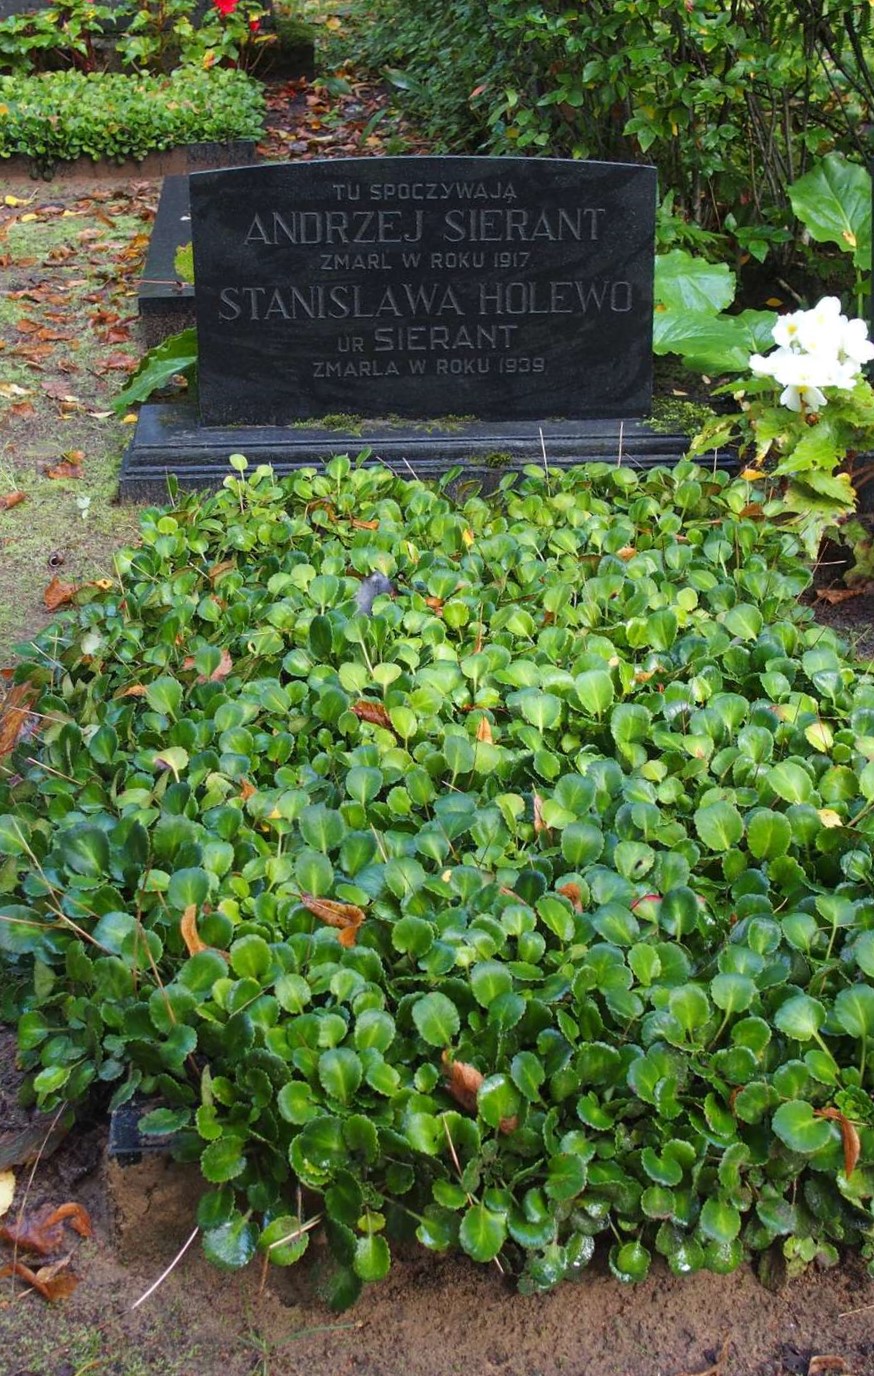 Tombstone of Stanisława Holewka and Andrzej Sierant